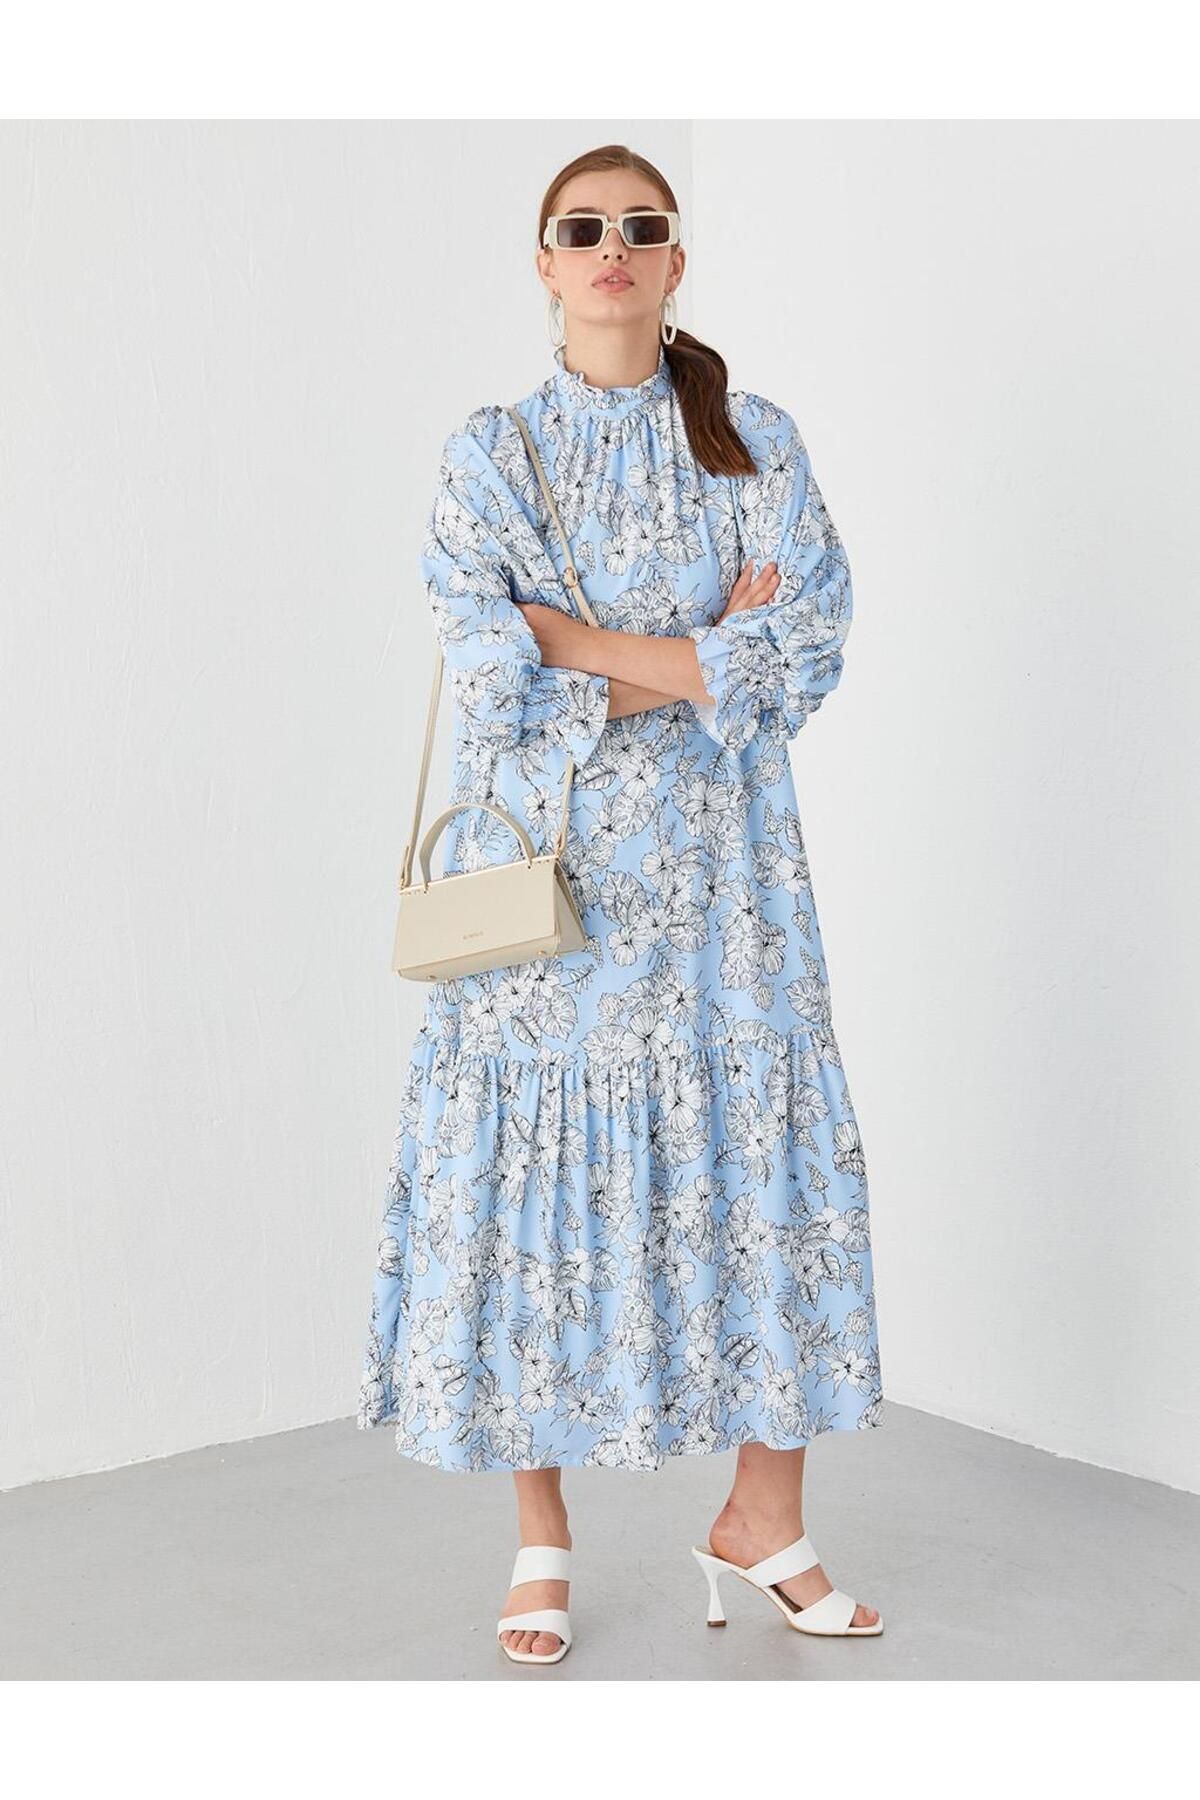 Kayra Fırfır Yakalı Floral Desenli Elbise Mavi-beyaz